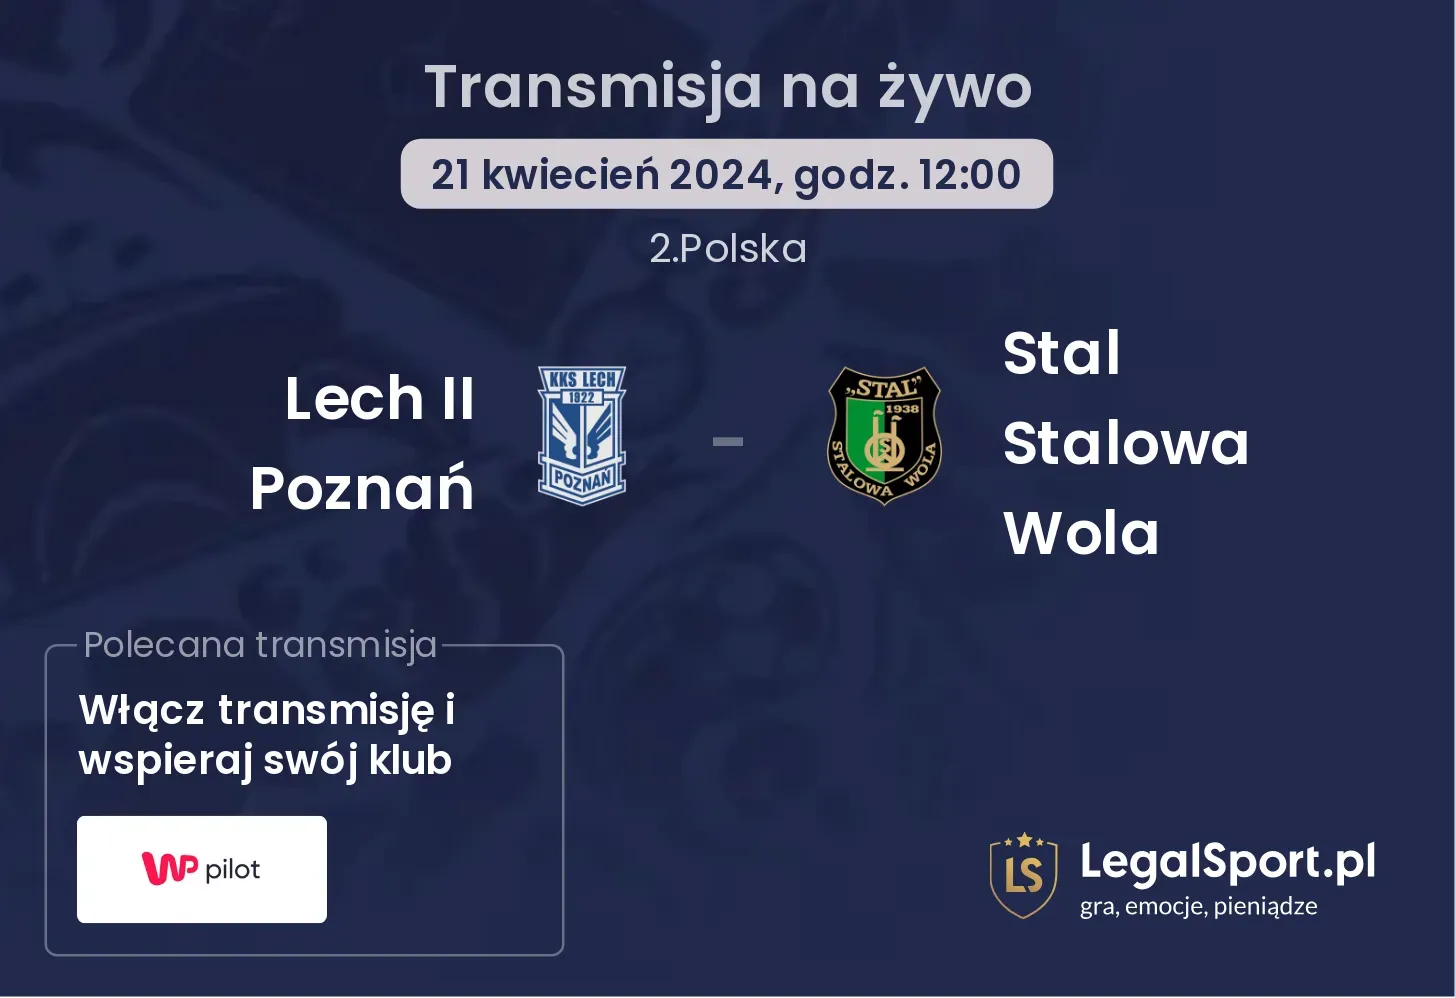 Lech II Poznań - Stal Stalowa Wola transmisja na żywo